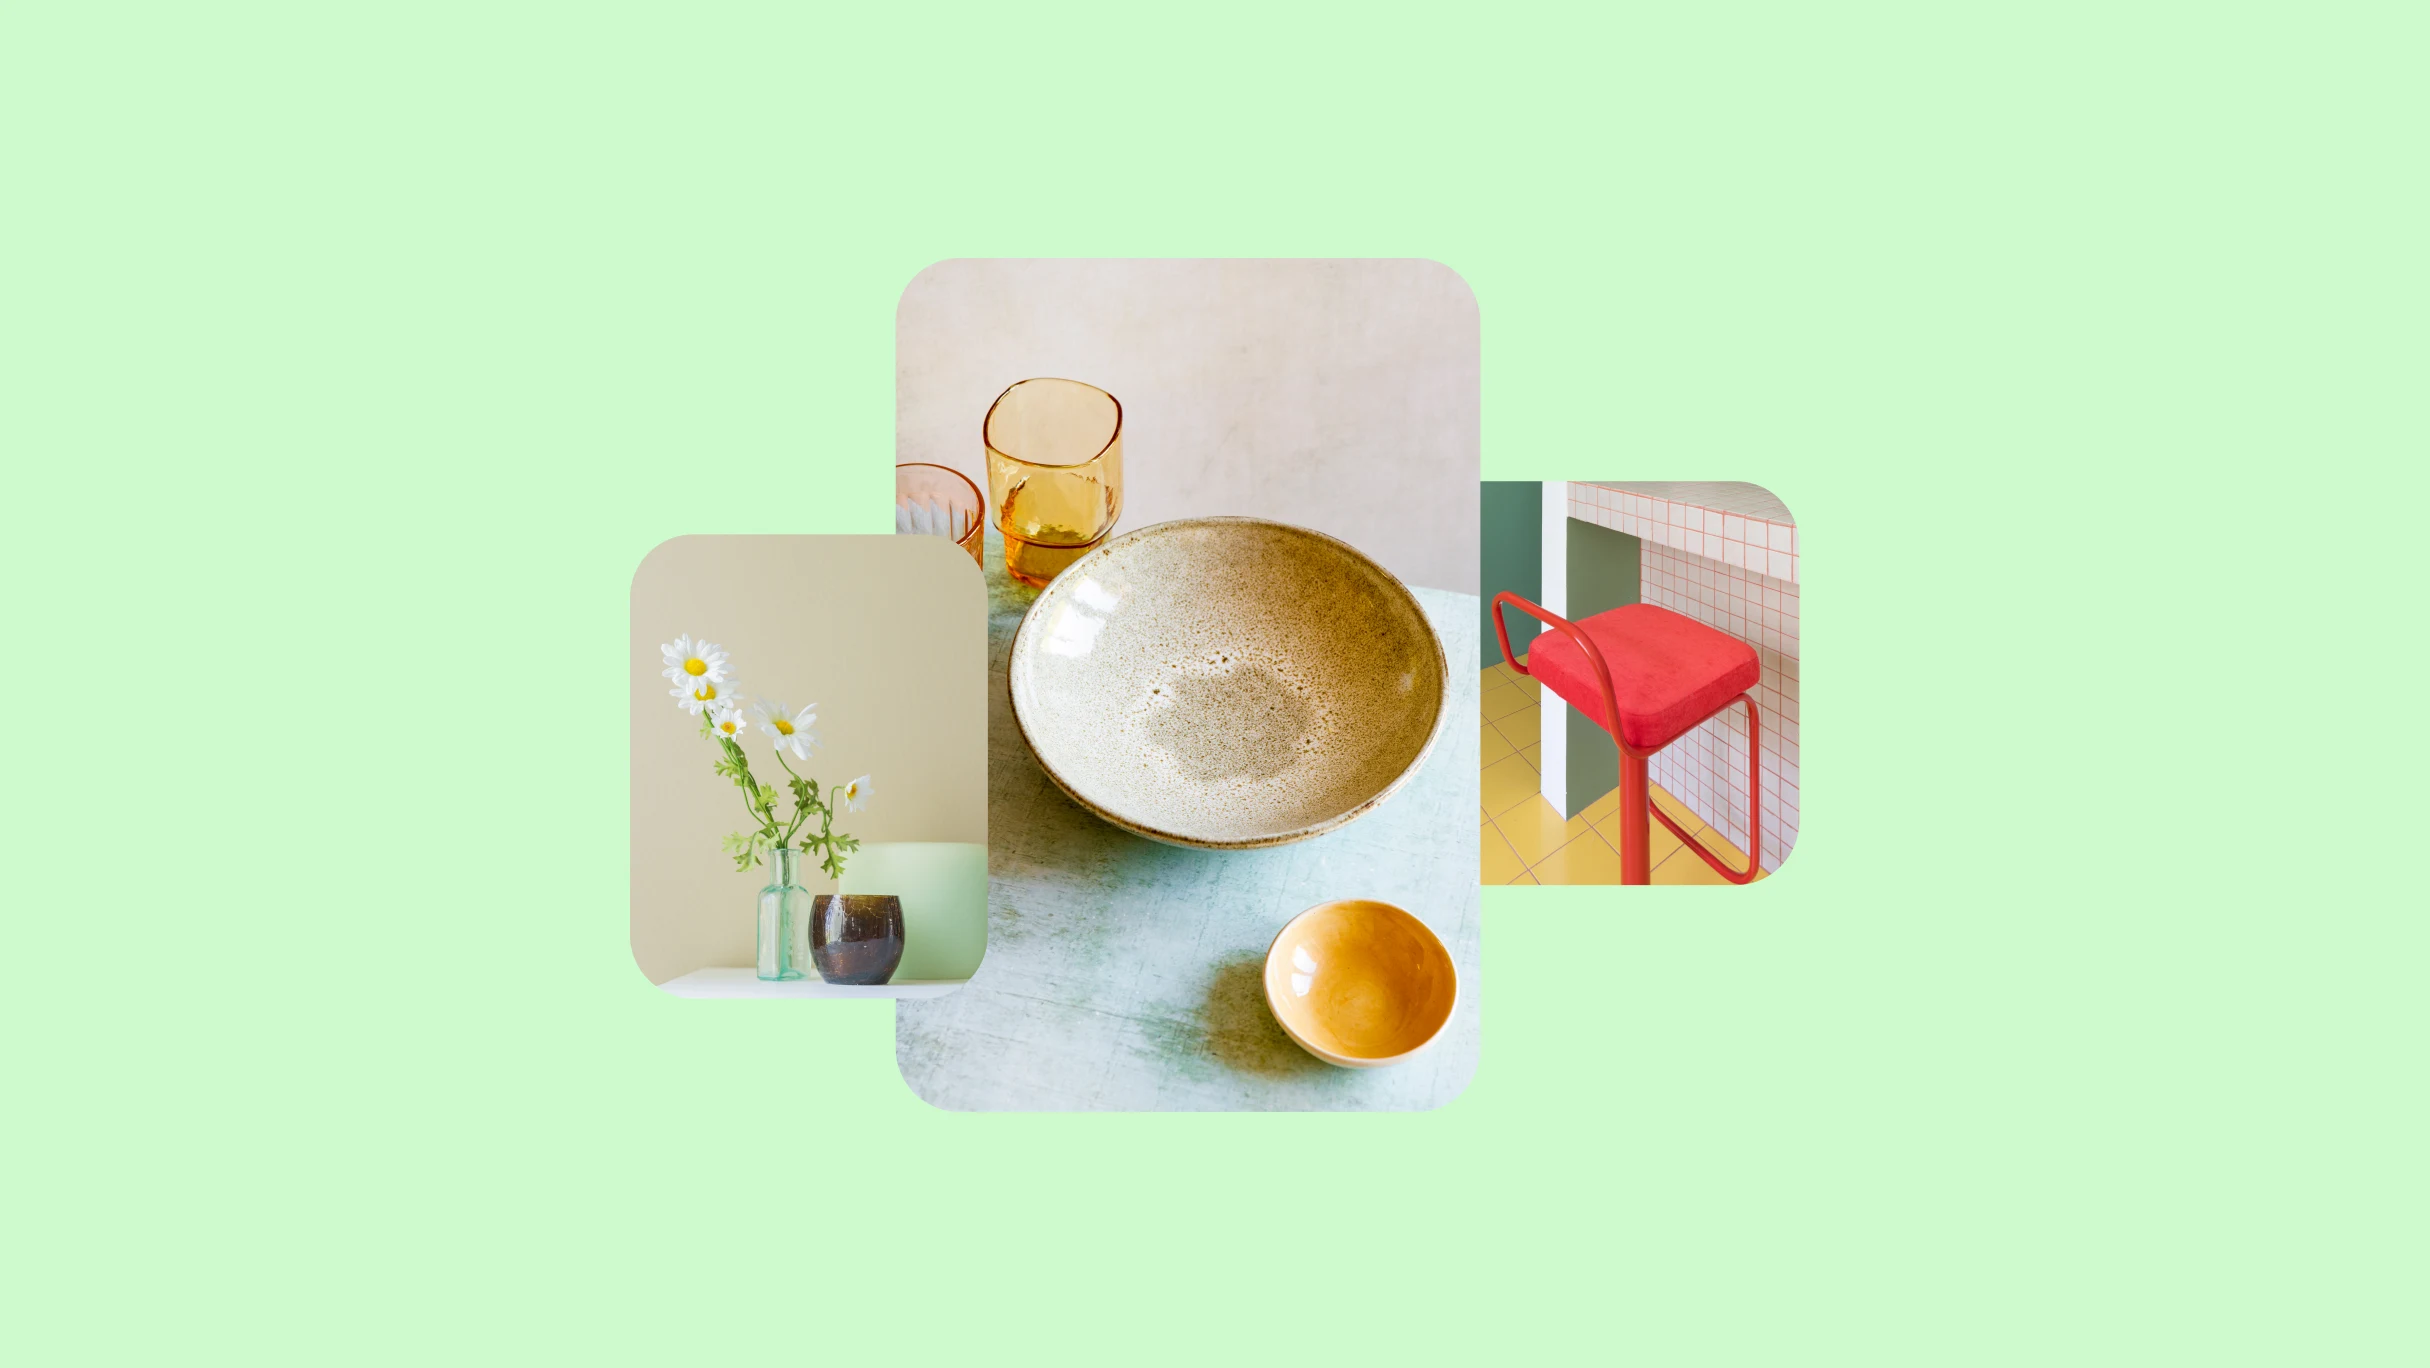 Tres imágenes sobre un fondo verde lima. A la izquierda, una imagen de margaritas en un florero transparente. En el centro, un recipiente de cerámica y gafas, y en el extremo derecho, una imagen de una silla roja en un mesón.